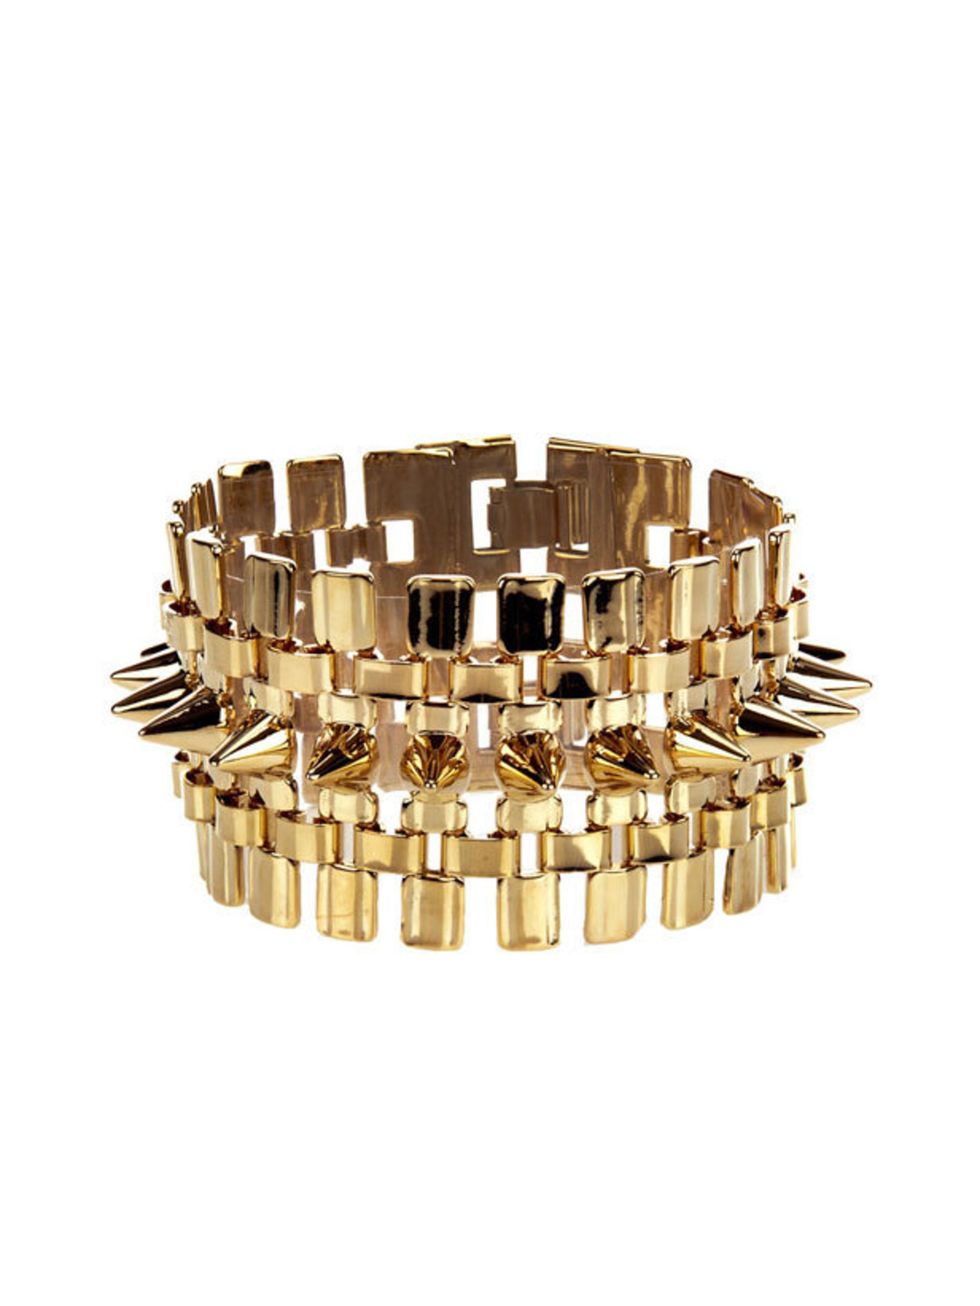 <p>Eddie Borgo gold bracelet, £175 (was £250), at <a href="http://www.farfetch.com/shopping/women/eddie-borgo-spike-bangle-item-10113312.aspx">Farfetch</a></p>